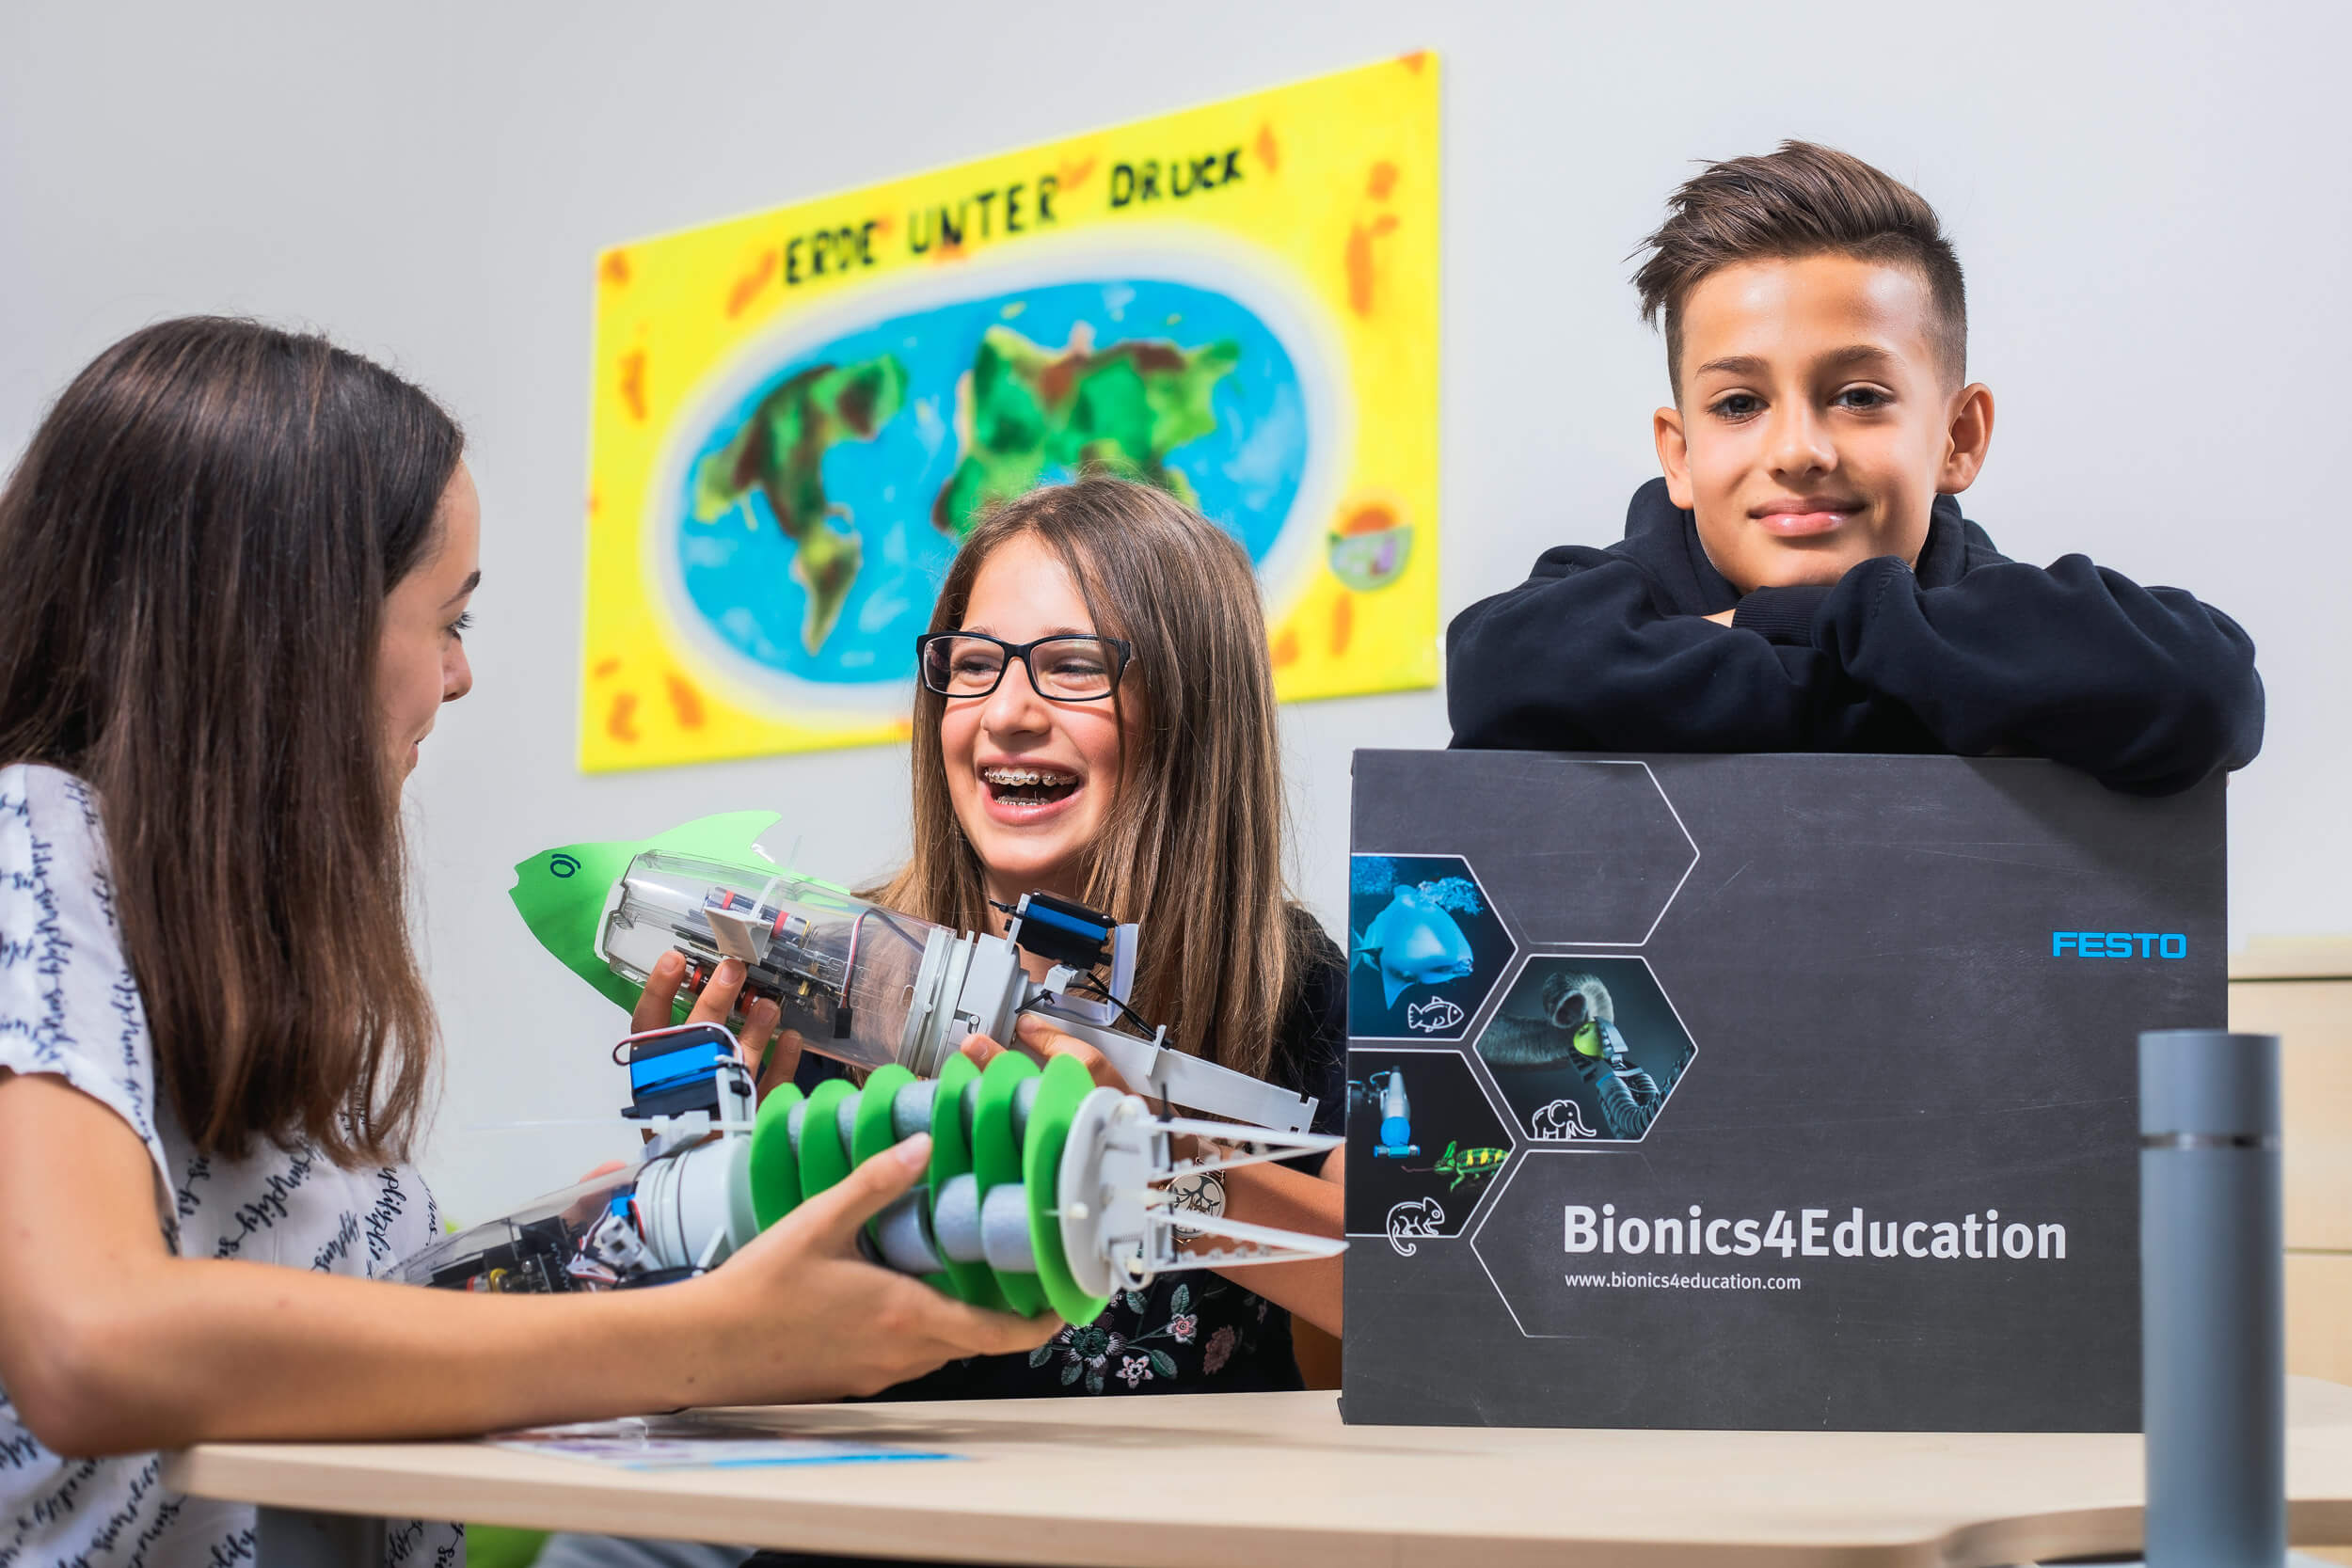 Mit Bionics4Education sollen Kinder und Jugendliche sich für Naturwissenschaft und Technik begeistern, indem Technik erlebbar und Wissen mit Spaß und Freude vermittelt wird.